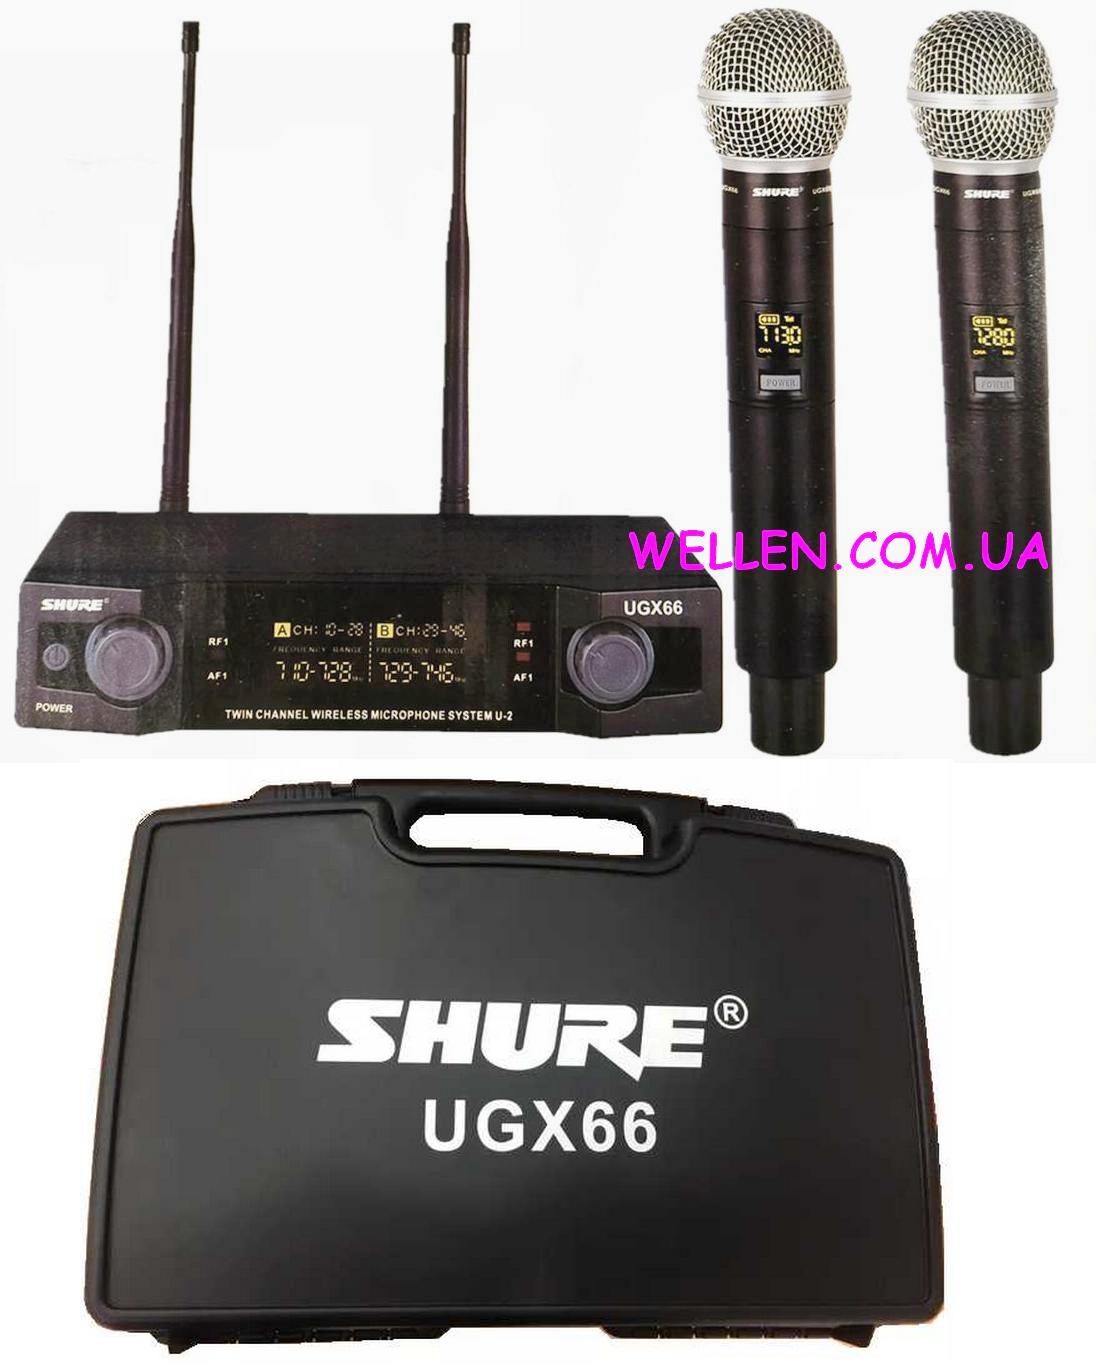 Shure UGX66 Радиосистема 2 радио микрофона. Цена от 1220 грн. до 2200 грн.